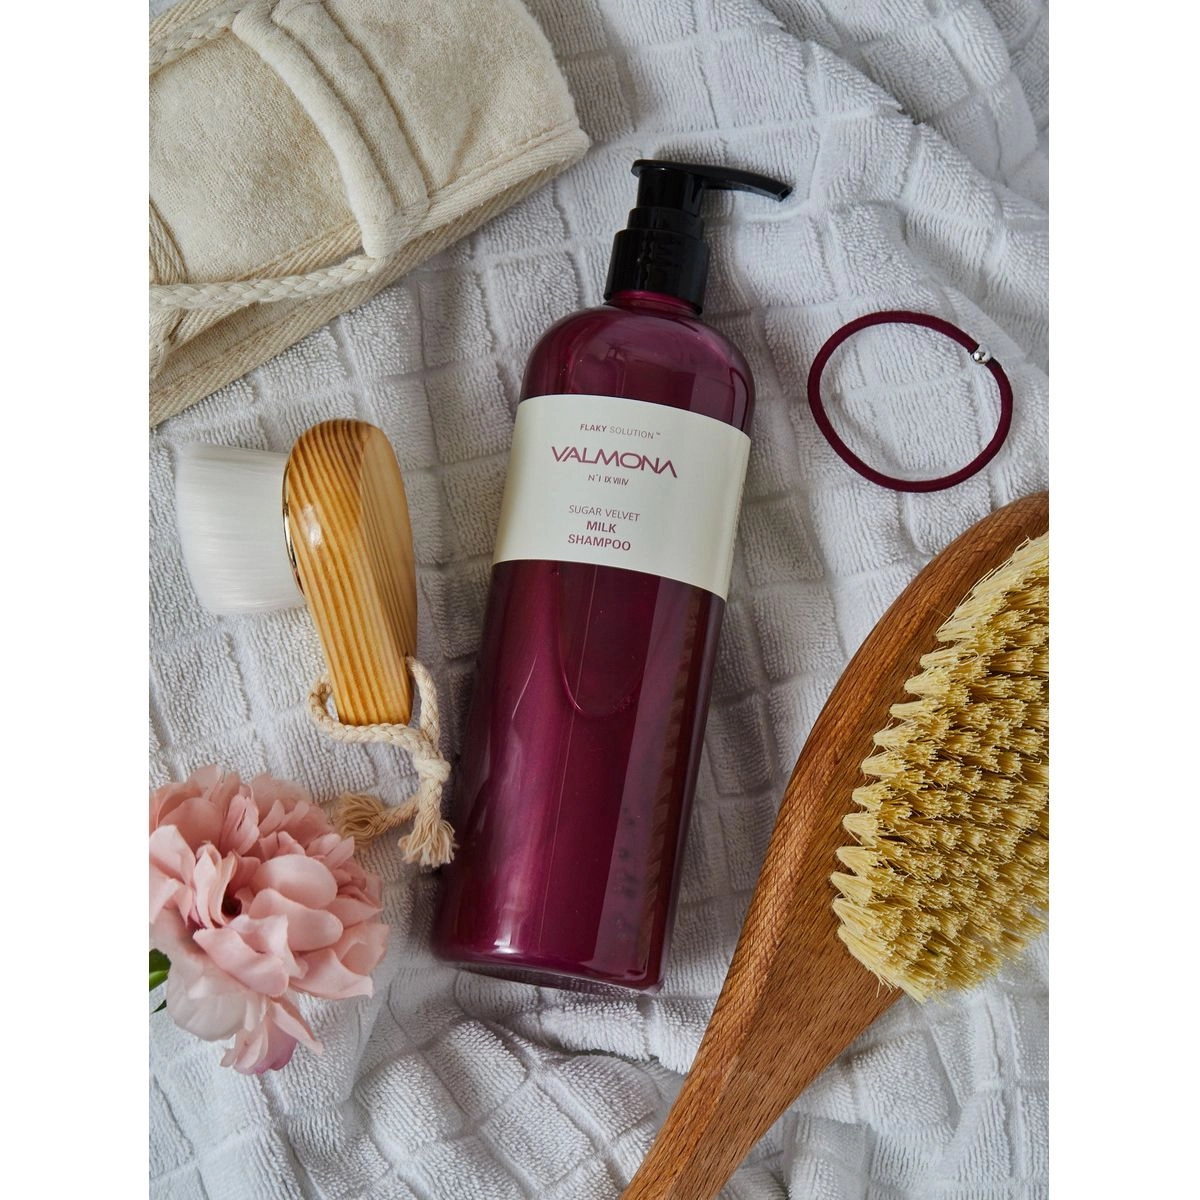 Восстанавливающий шампунь для волос с молоком и экстрактами ягод - Valmona Flaky Solution Sugar Velvet Milk Shampoo, 480 мл - фото N2